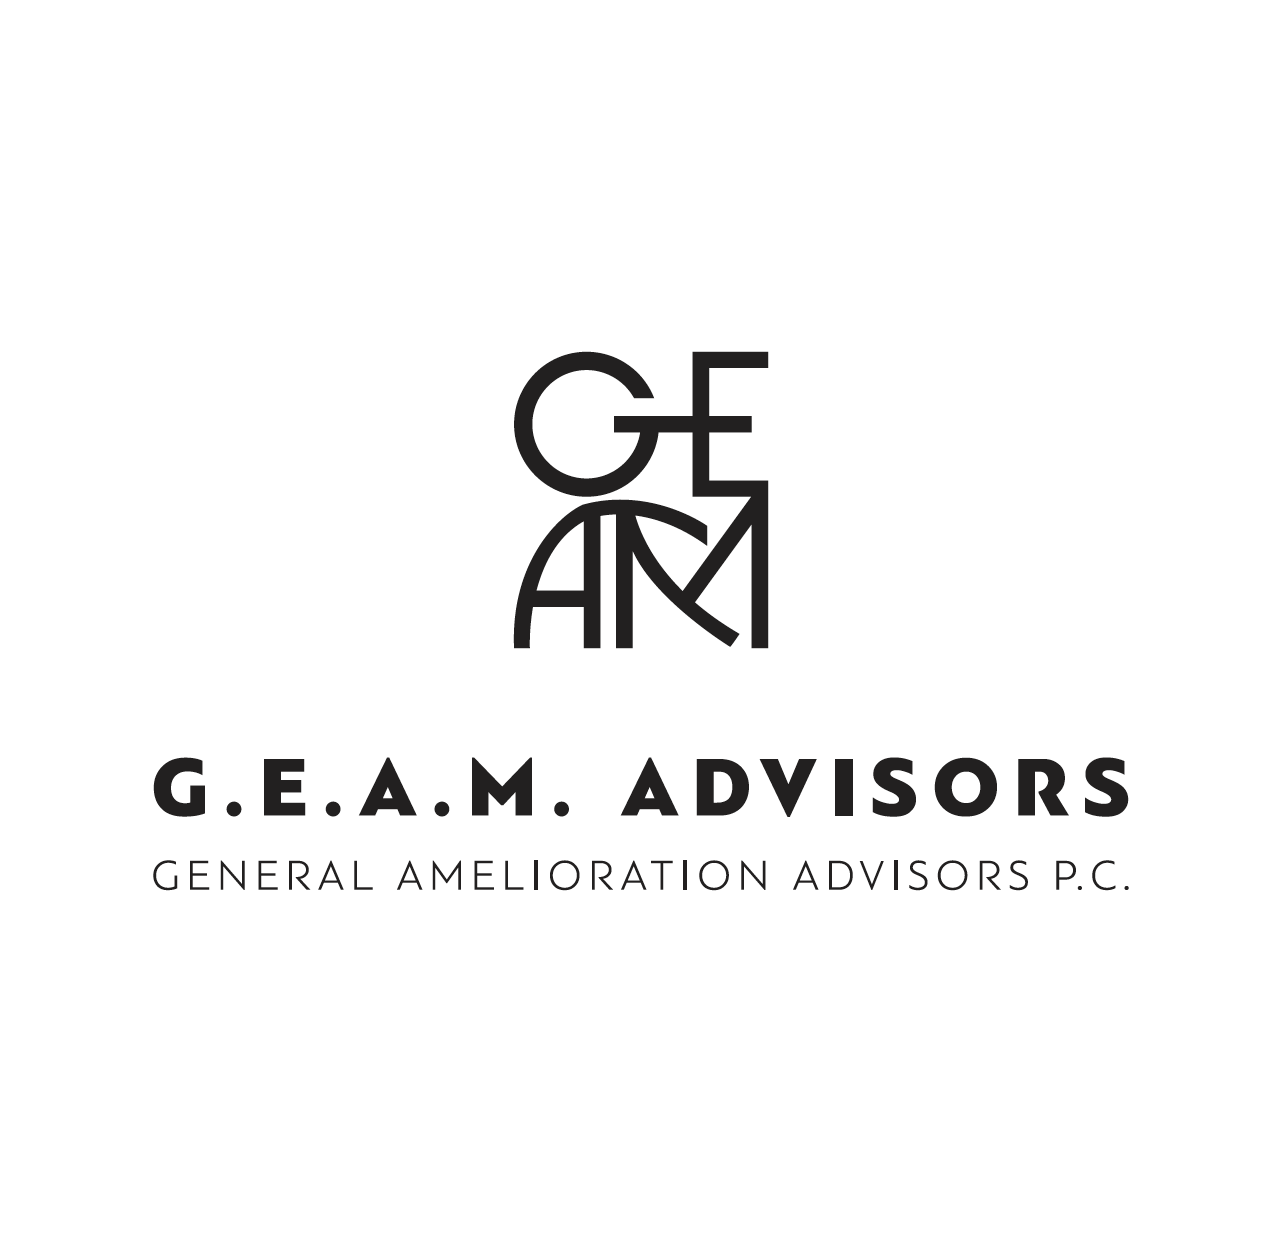 GEAM Advisors P.C.